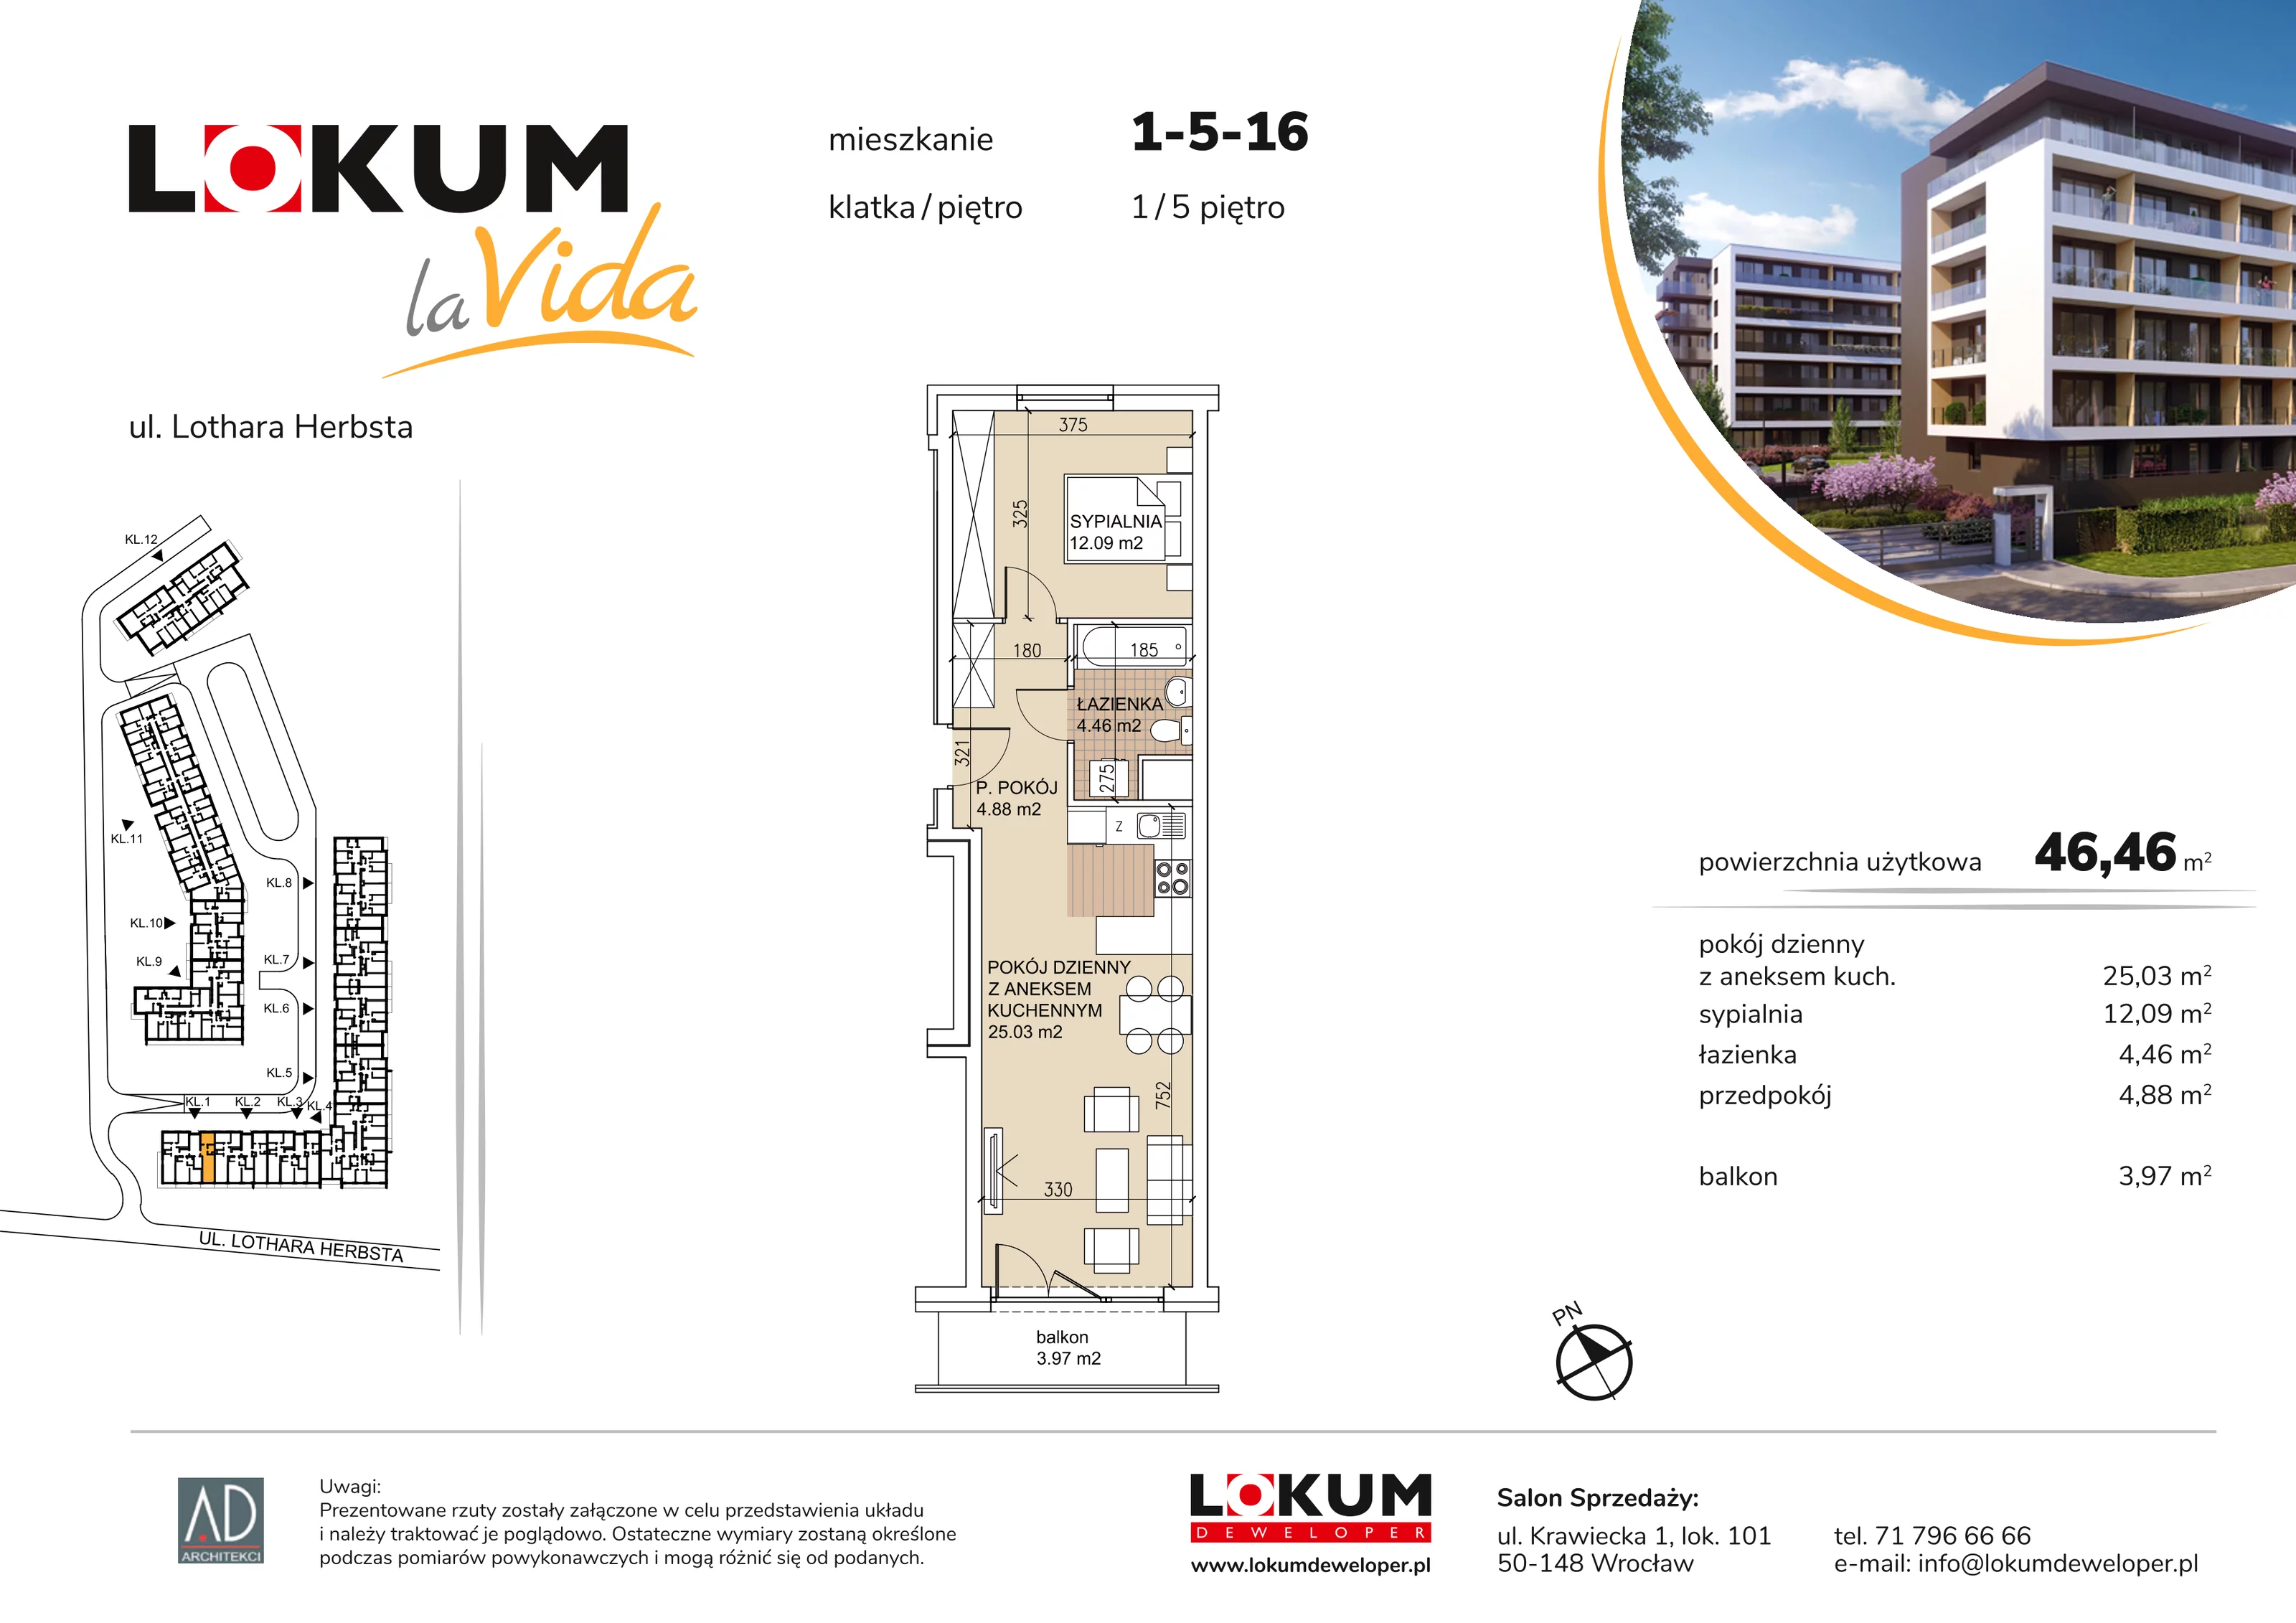 Mieszkanie 46,46 m², piętro 5, oferta nr 1-5-16, Lokum la Vida, Wrocław, Sołtysowice, ul. Lothara Herbsta